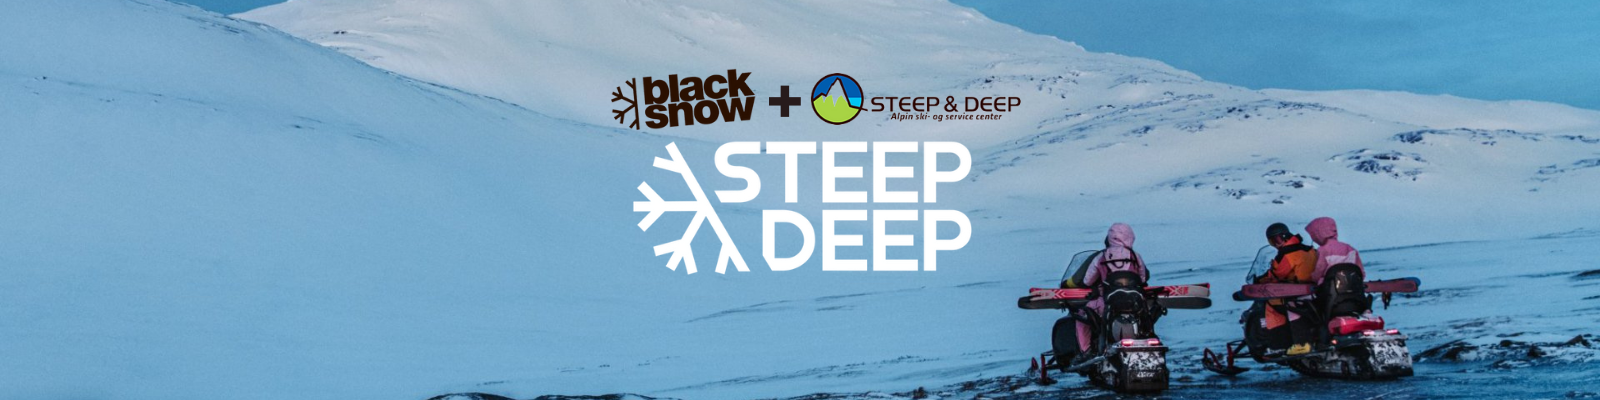 Steep & Deep og Blacksnow går sammen